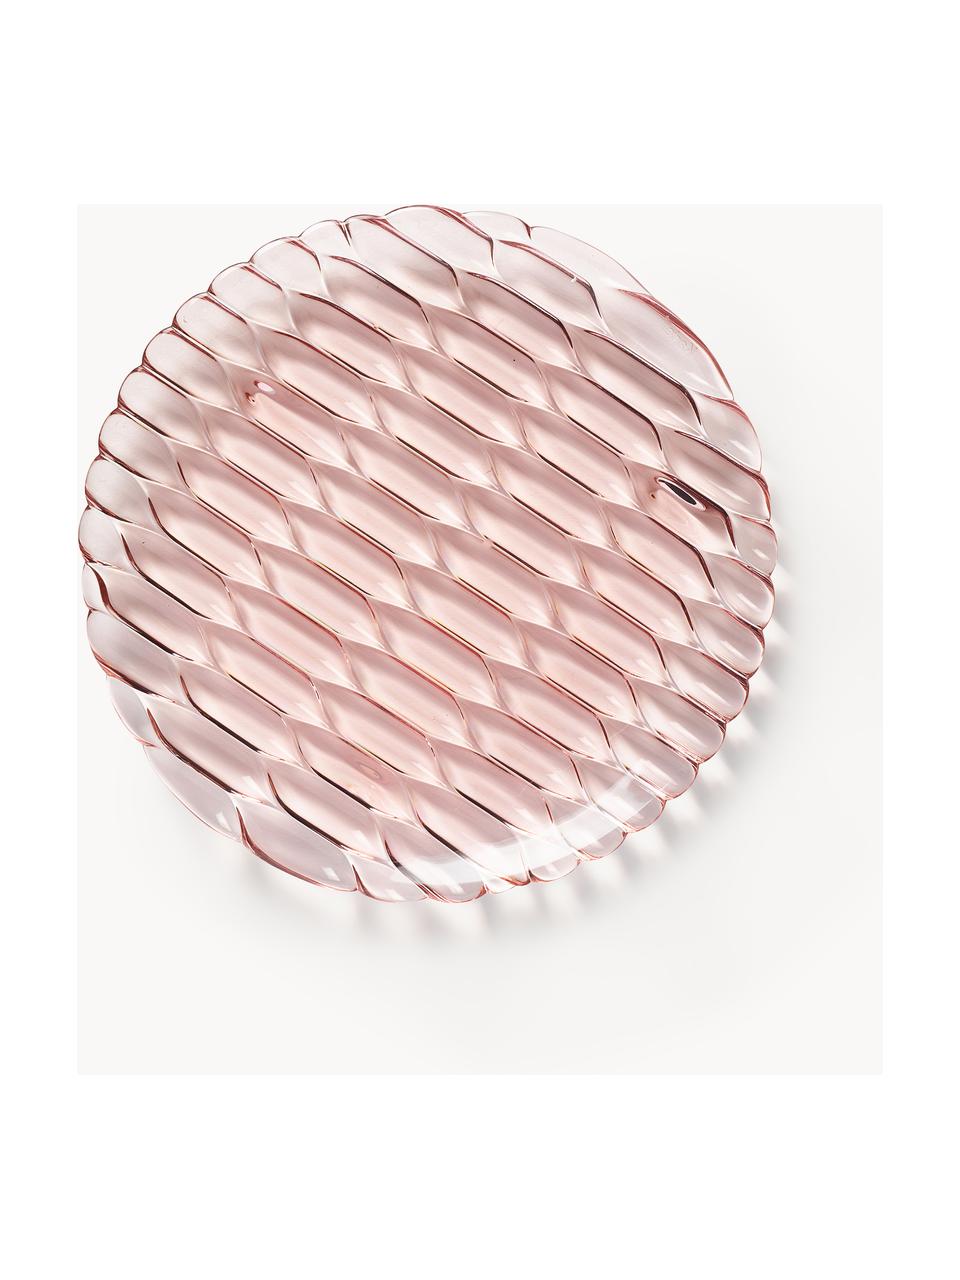 Snídaňové talíře se strukturálním vzorem Jellies, 4 ks, Umělá hmota, Světle růžová, Ø 22 cm